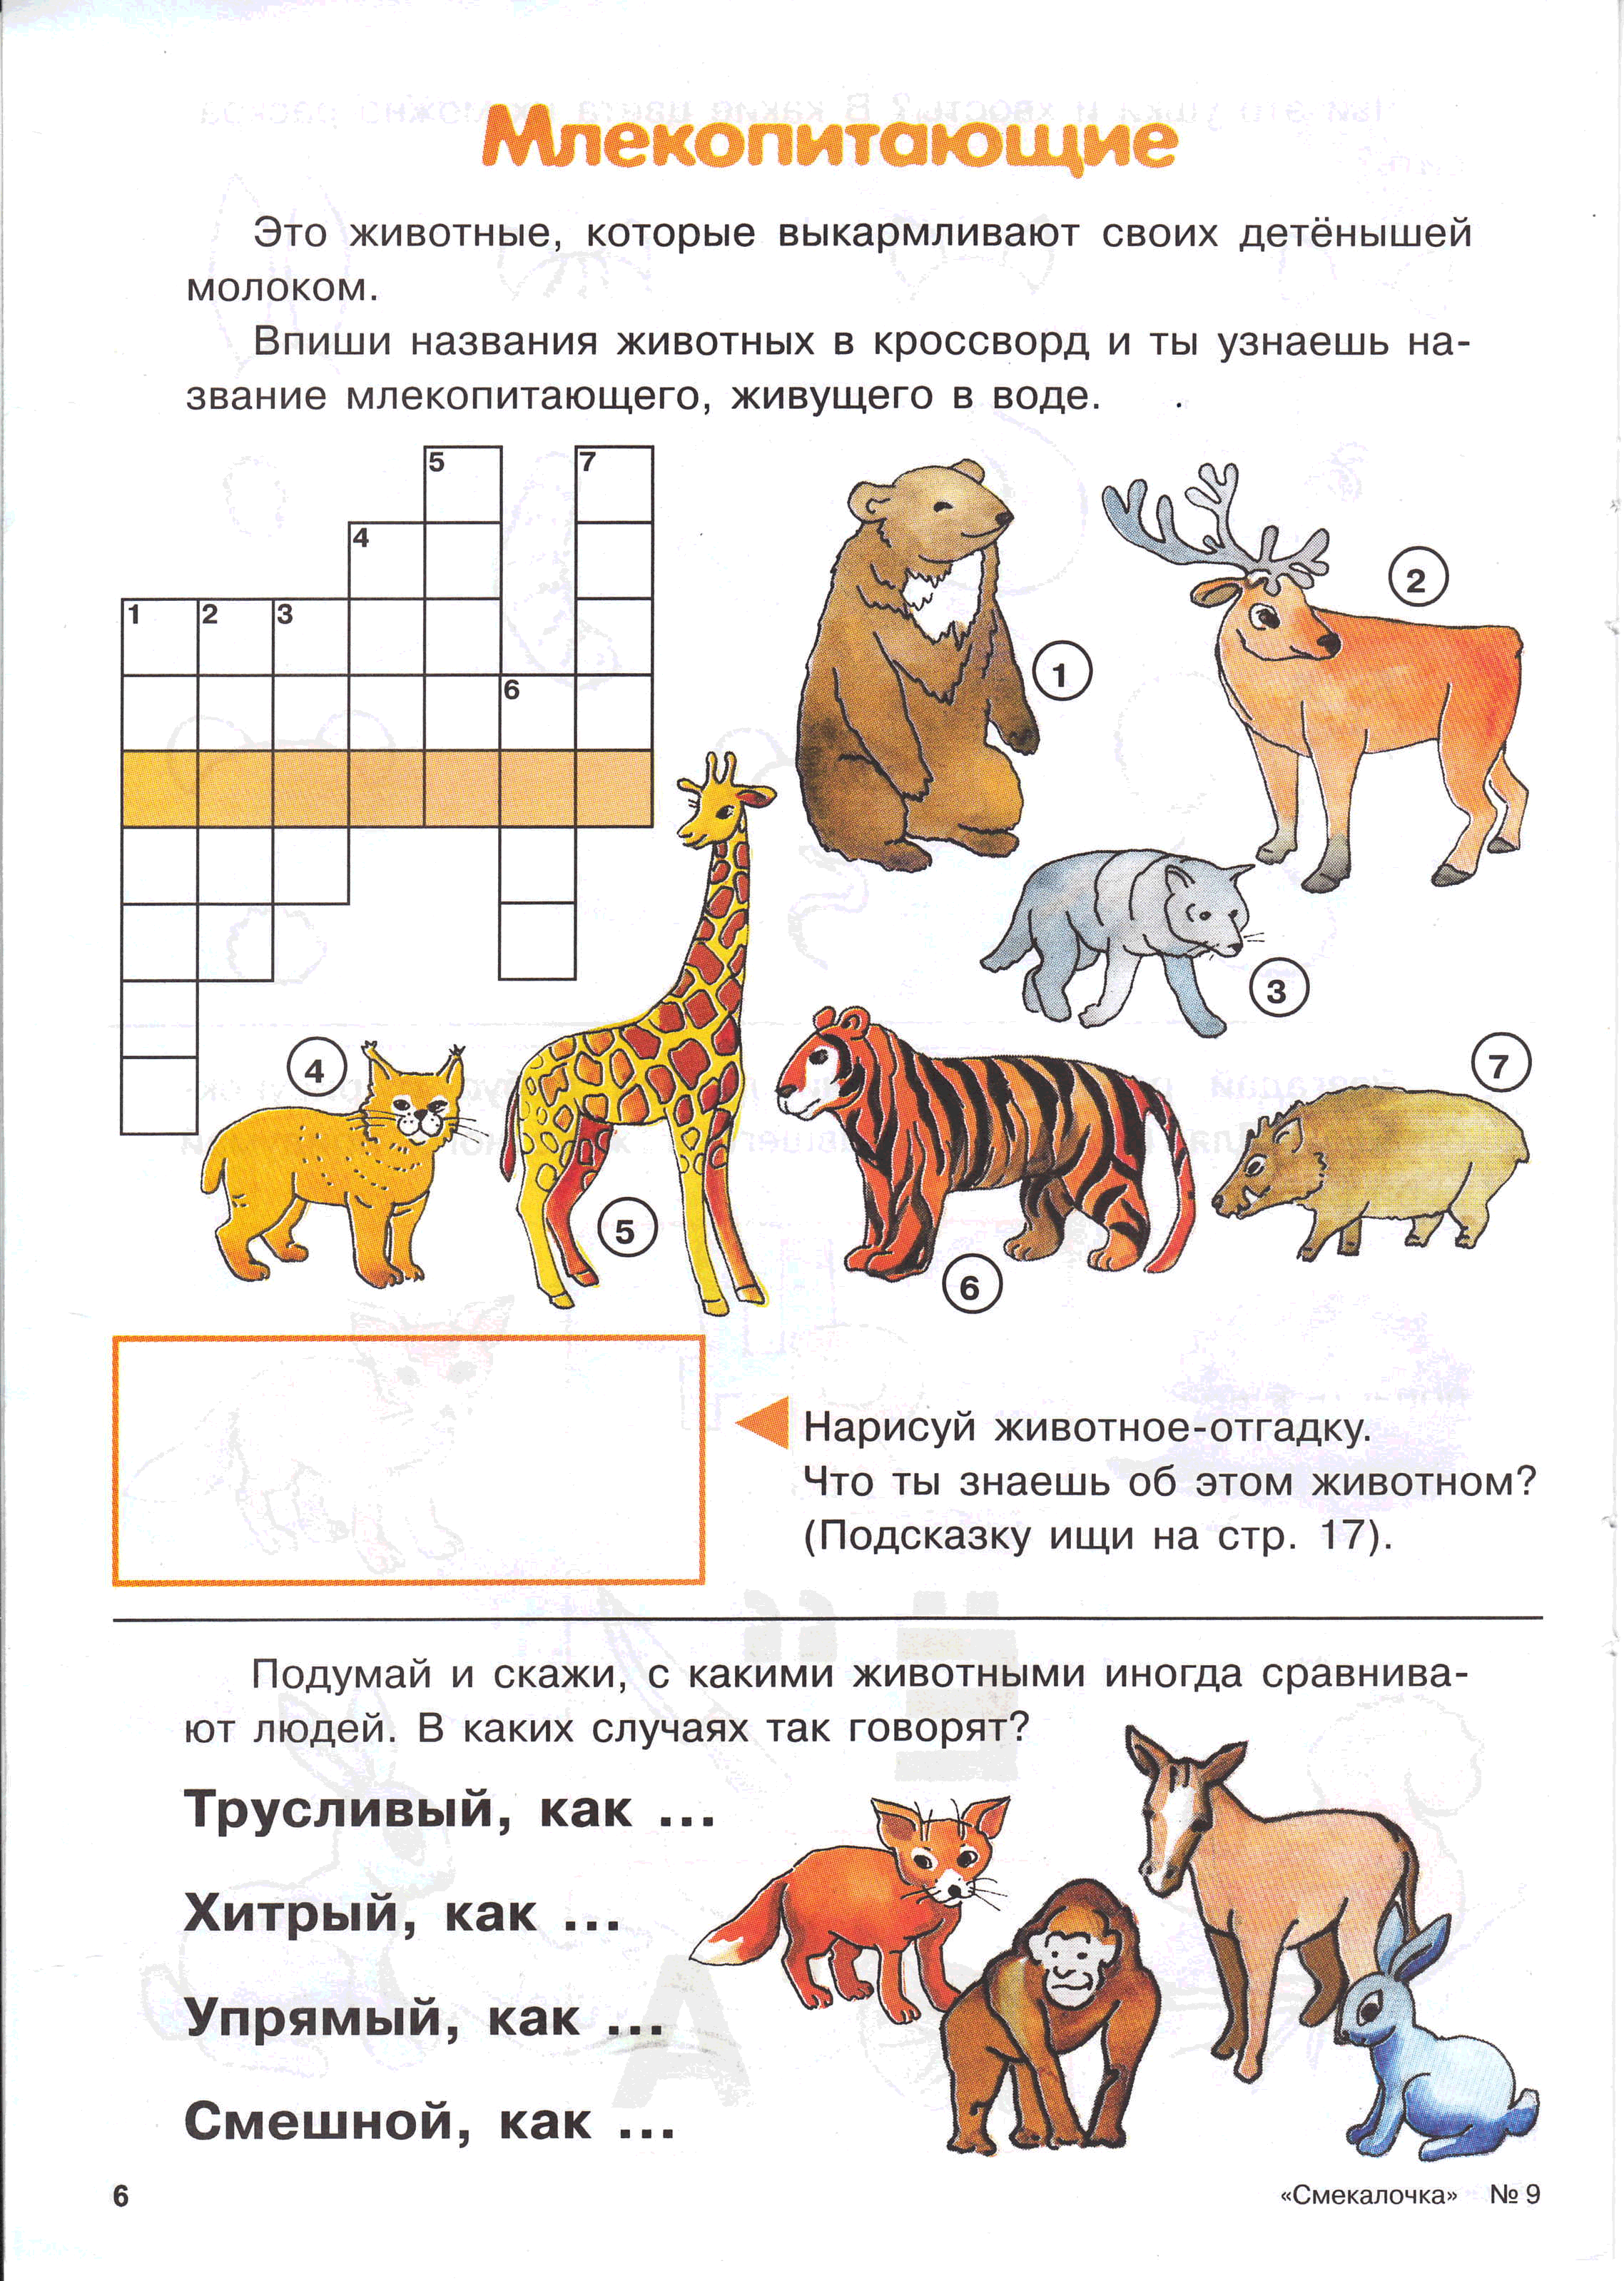 Тест по животным 1 класс. Задания про животных. Млекопитающие задания для 1 класса. Задания про животных для дошкольников. Животные задания для дошкольников.